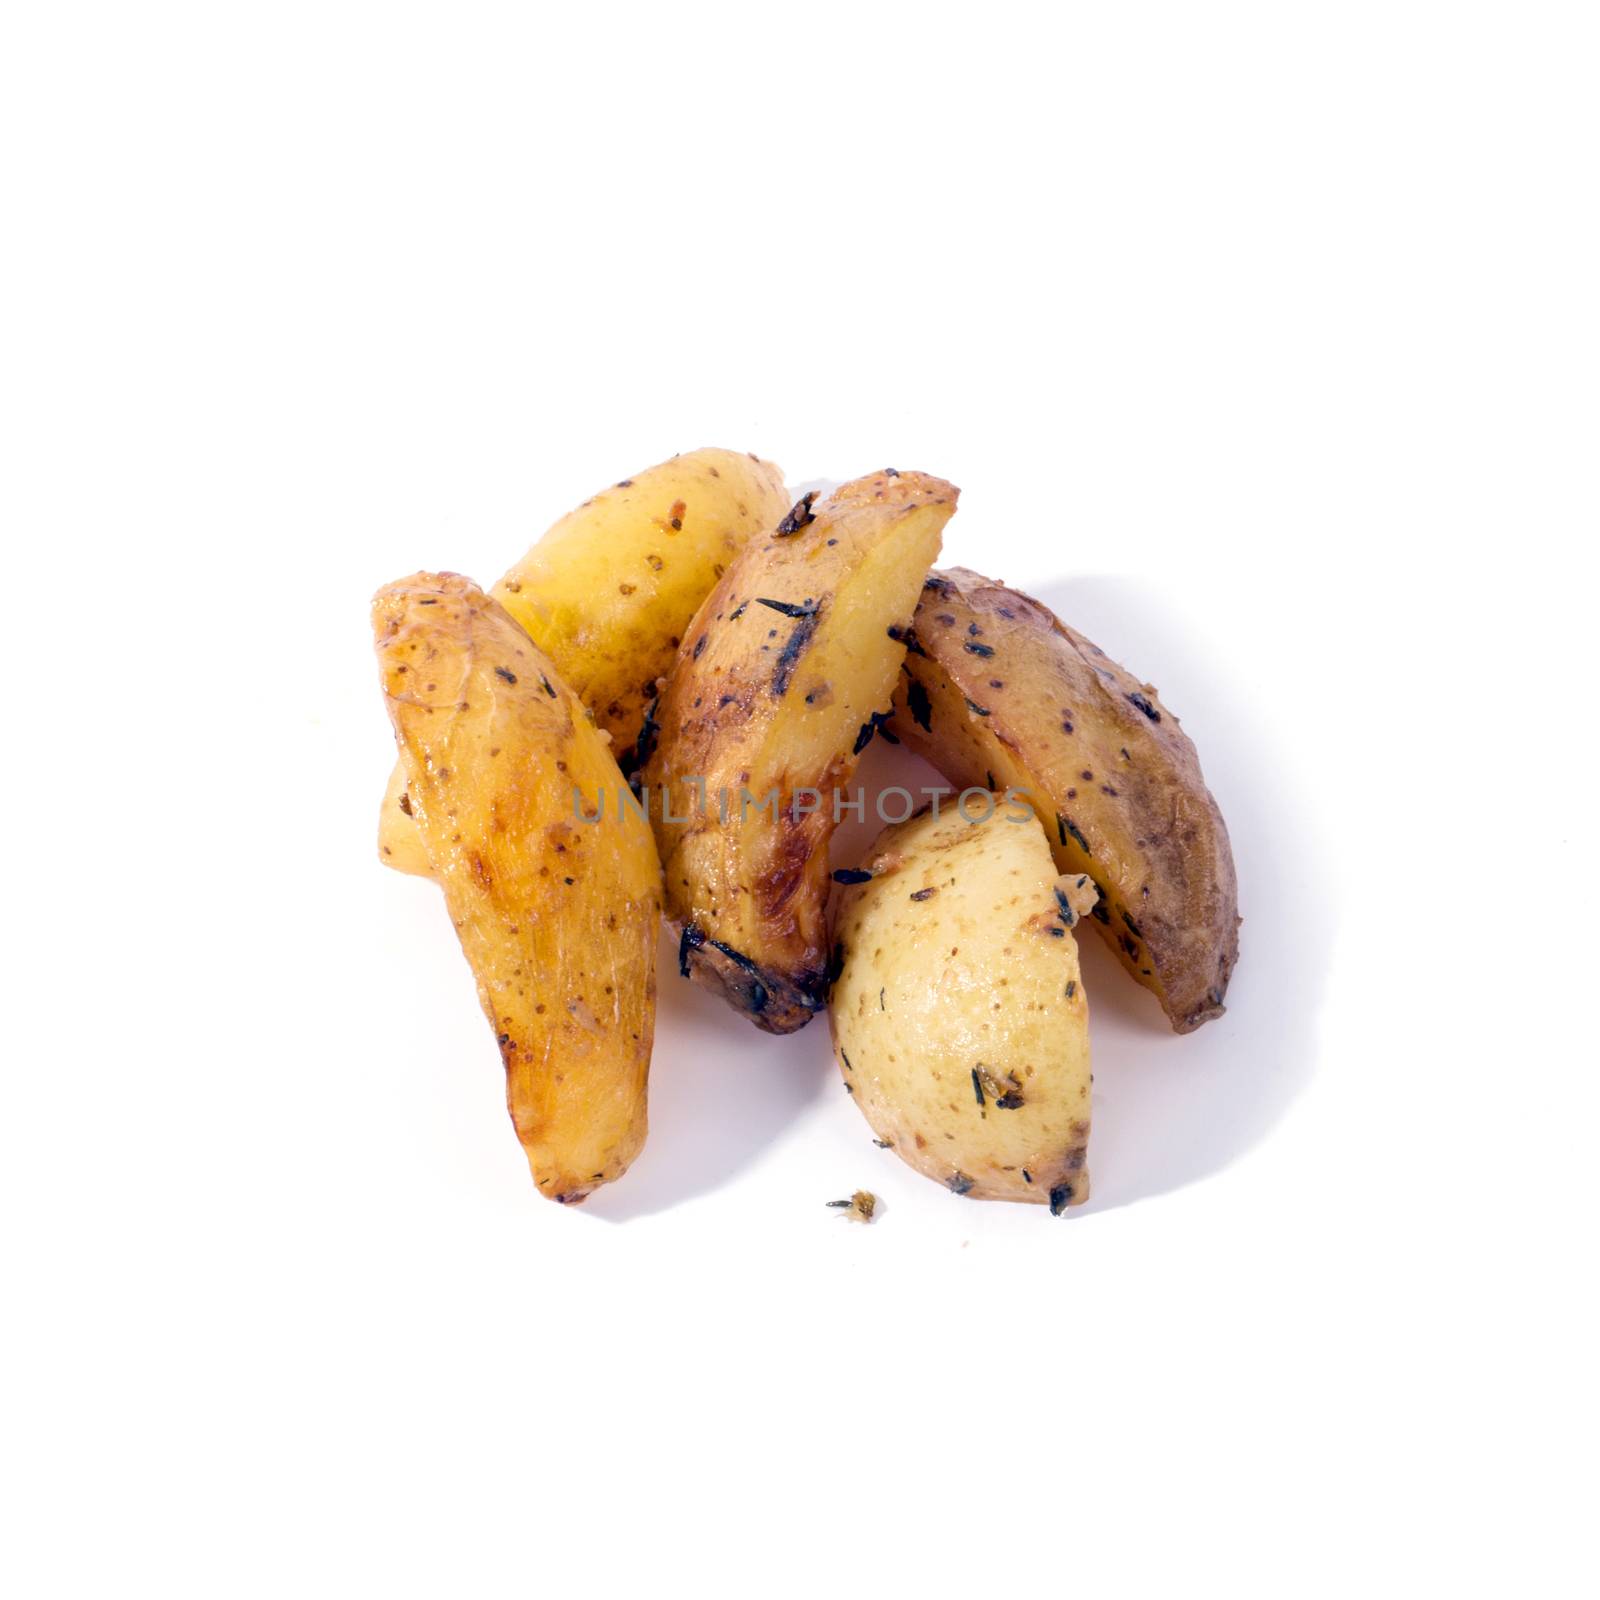 Smoked potato by rufatjumali